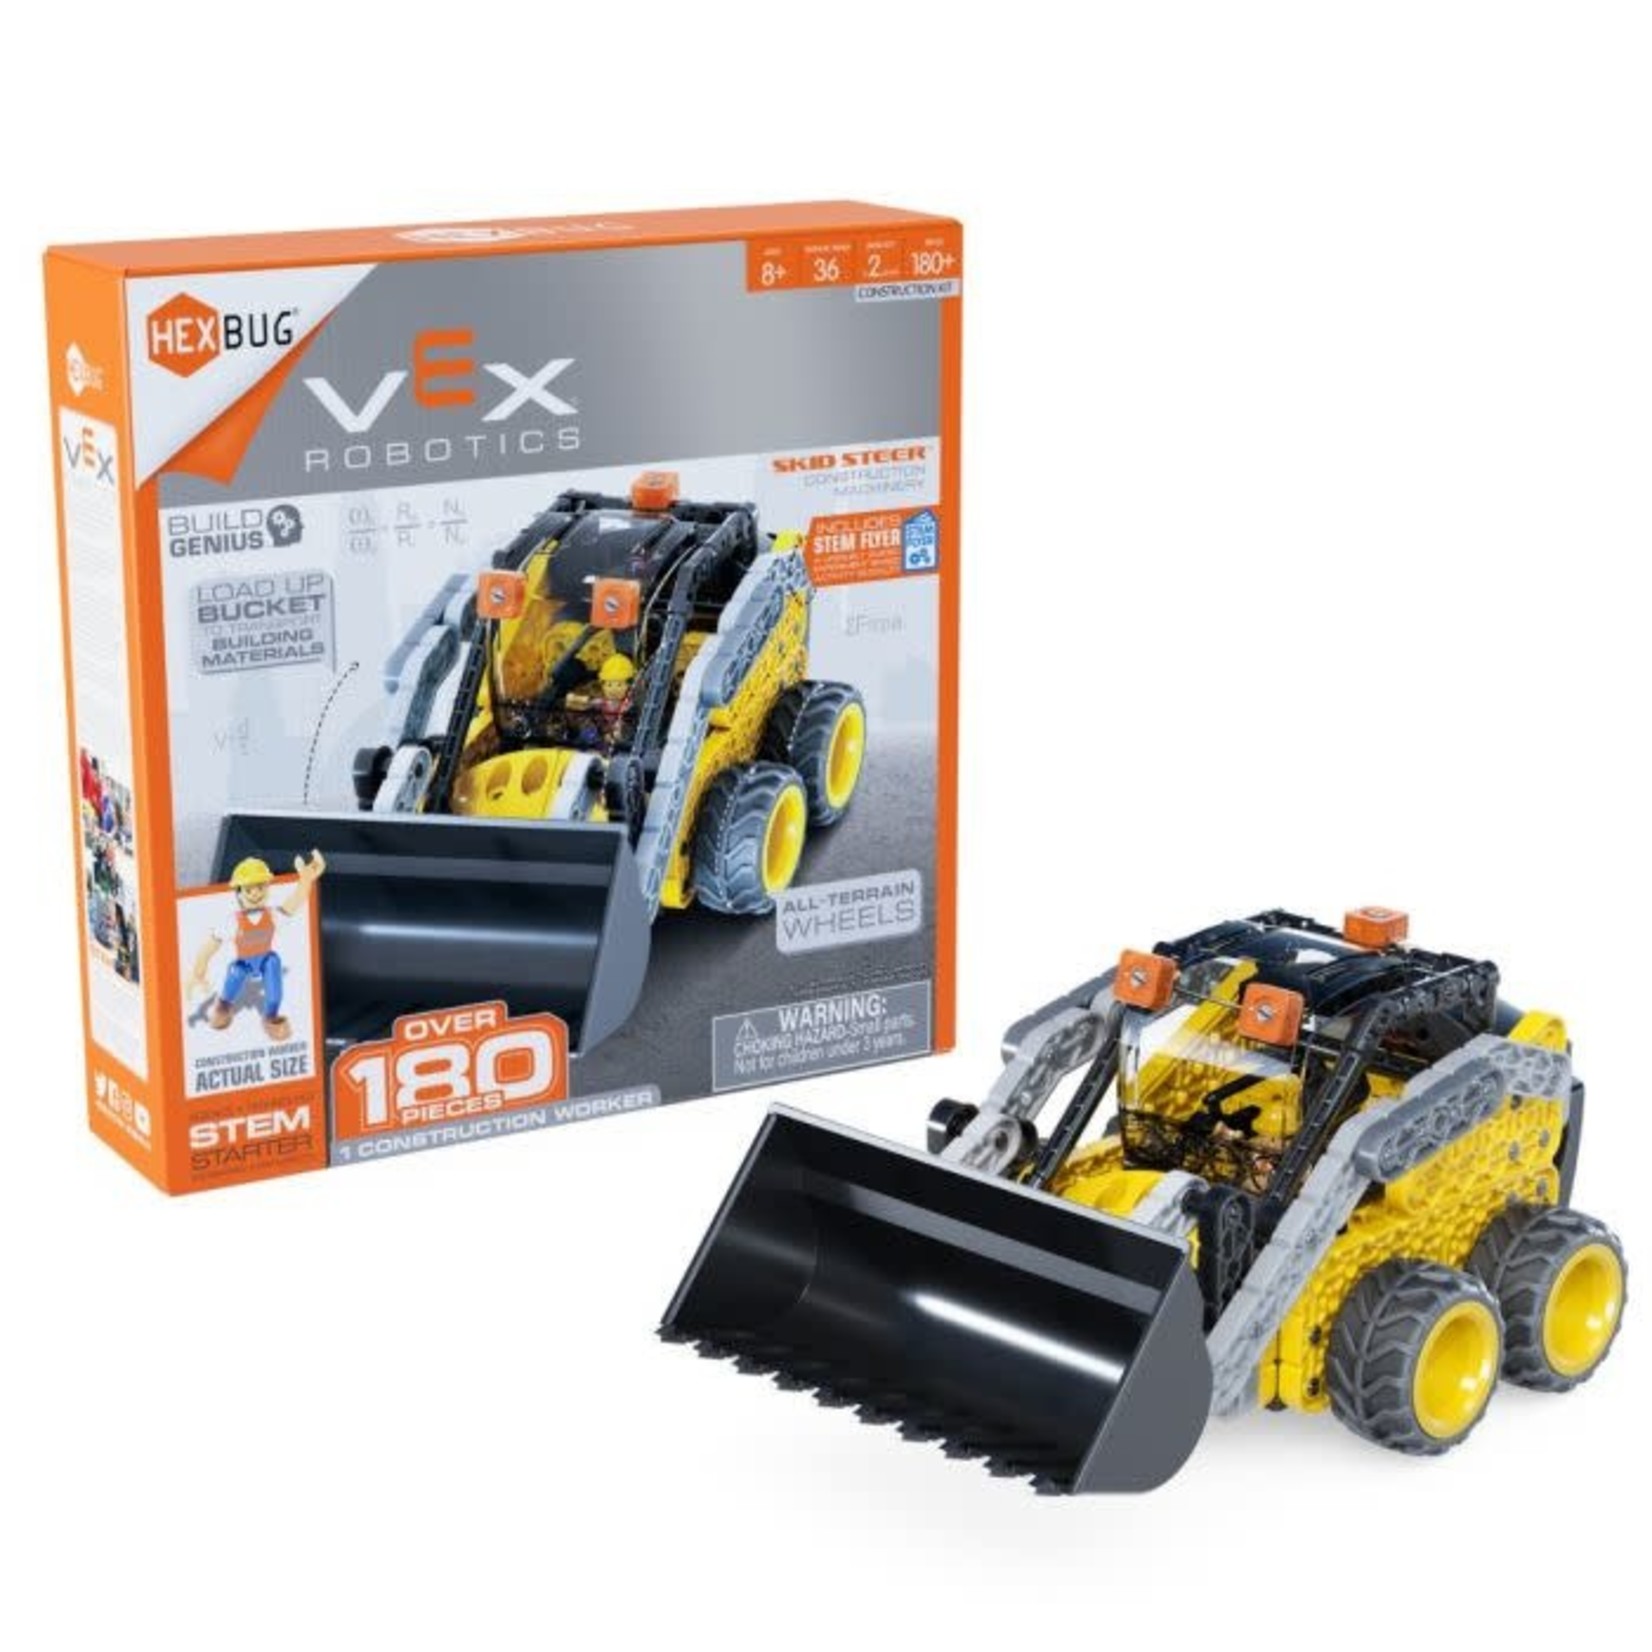 Vex Robots VEX406-7606 Vex Robotics Skid Steer